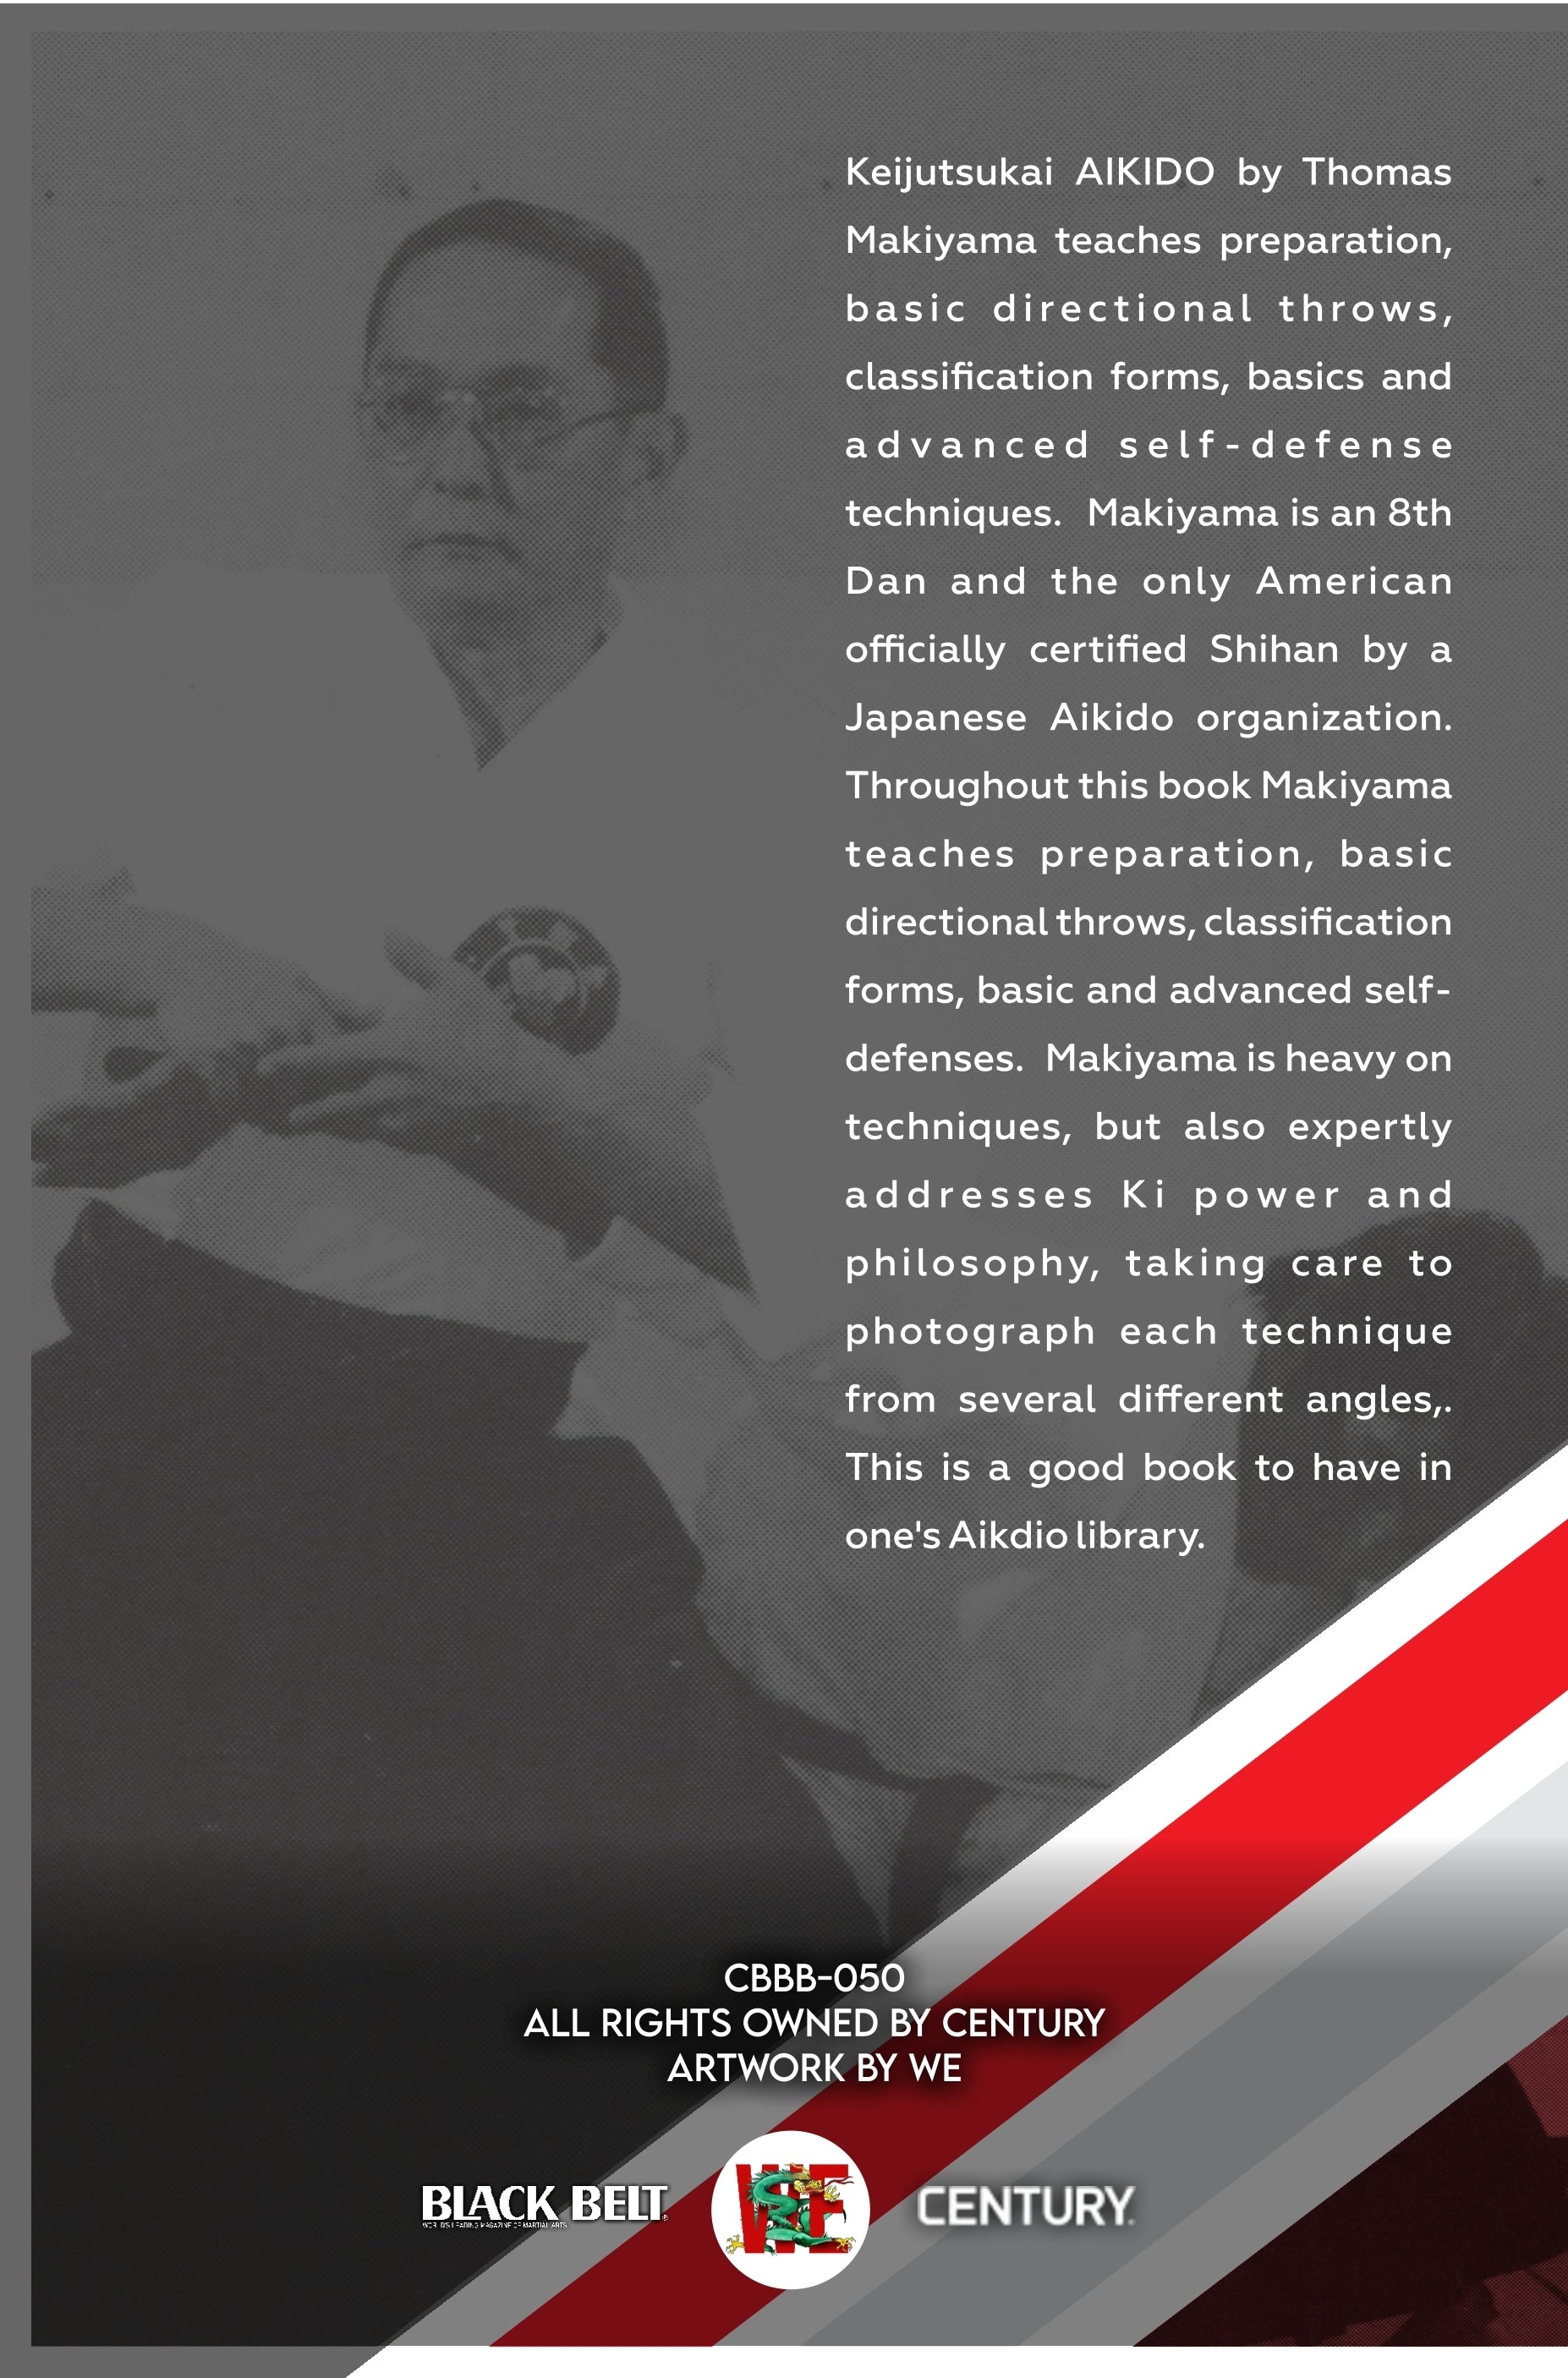 DIGITAL E-BOOK Keijutsukai Aikido - Thomas Makiyama